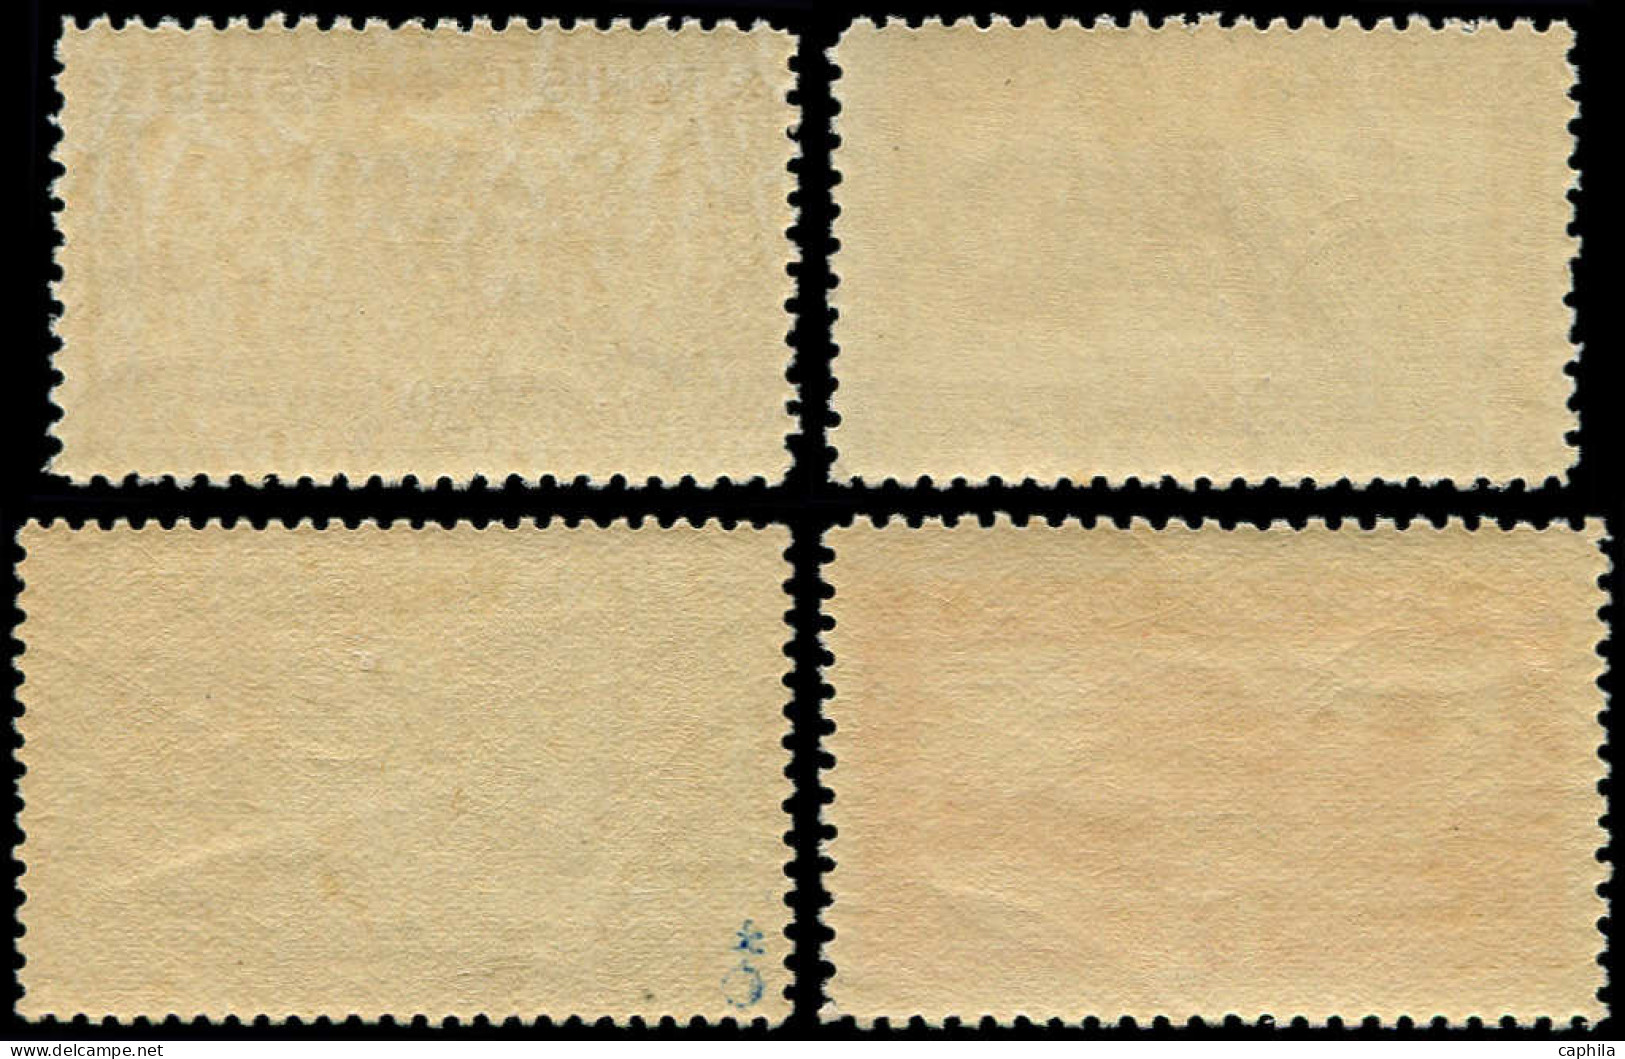 * TUNISIE - Poste - 177/80, Amphithéâtre D'El Djem - Unused Stamps